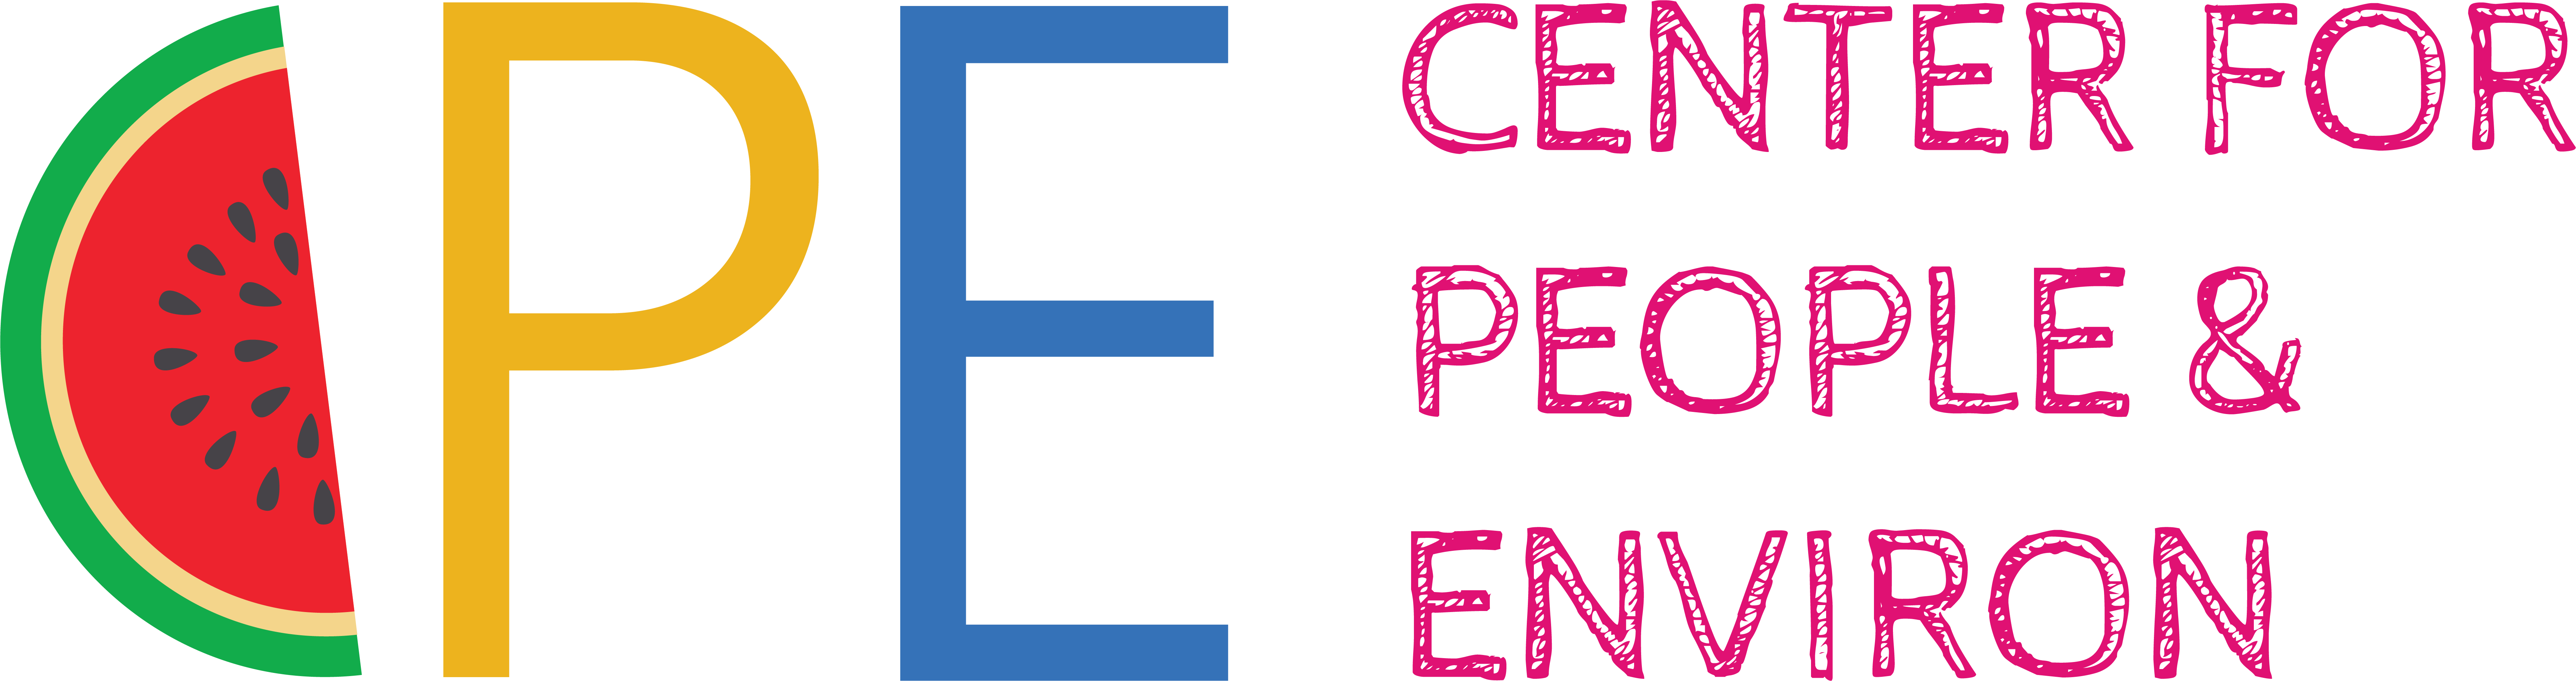 CPE_Logo